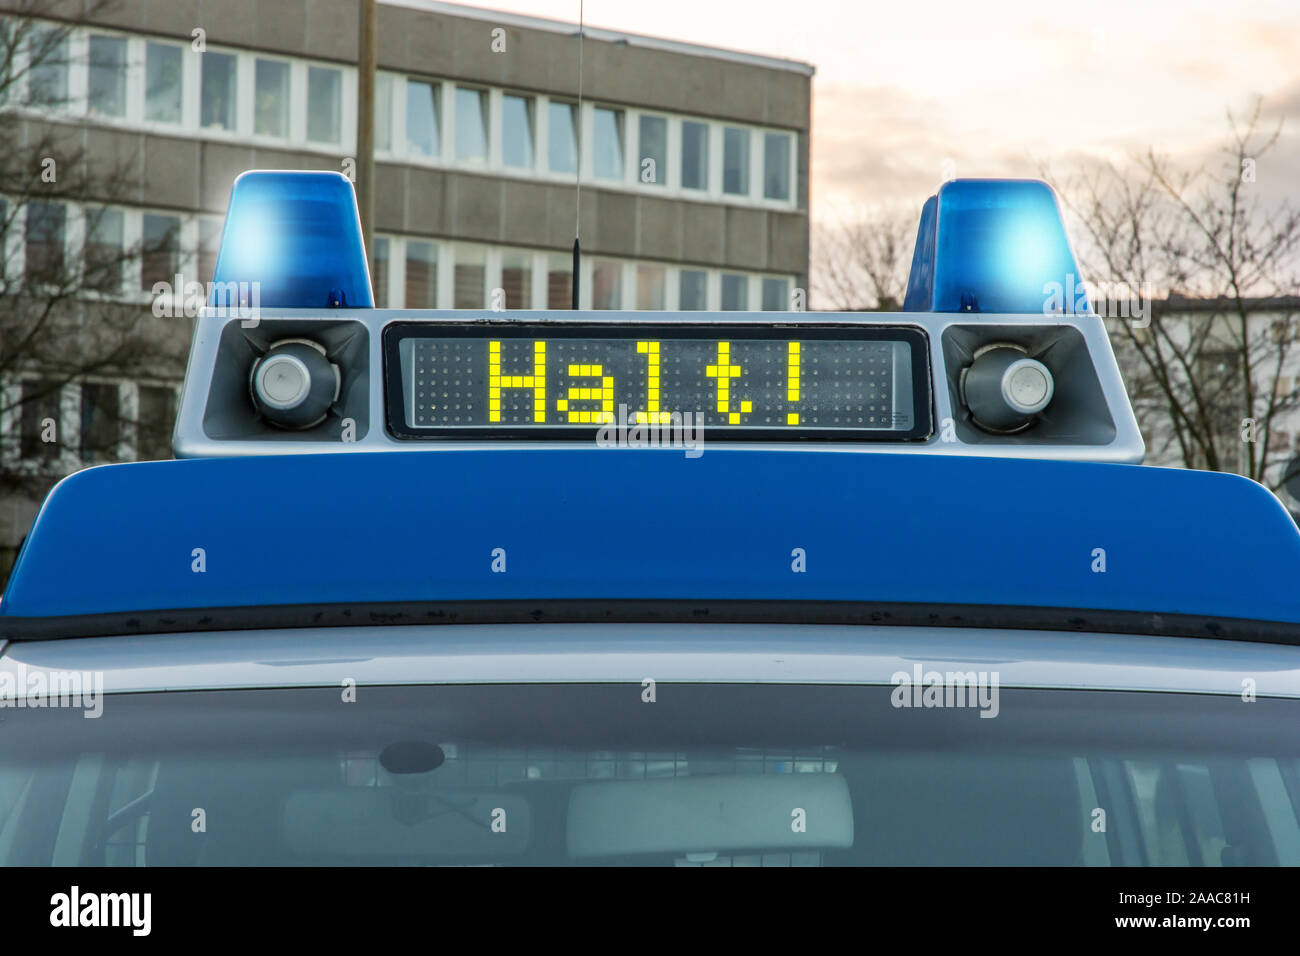 Polizei Auto mit dem deutschen Wort für Stop! In der Anzeige auf blau  umgestellt werden, Rundumleuchte Stockfotografie - Alamy